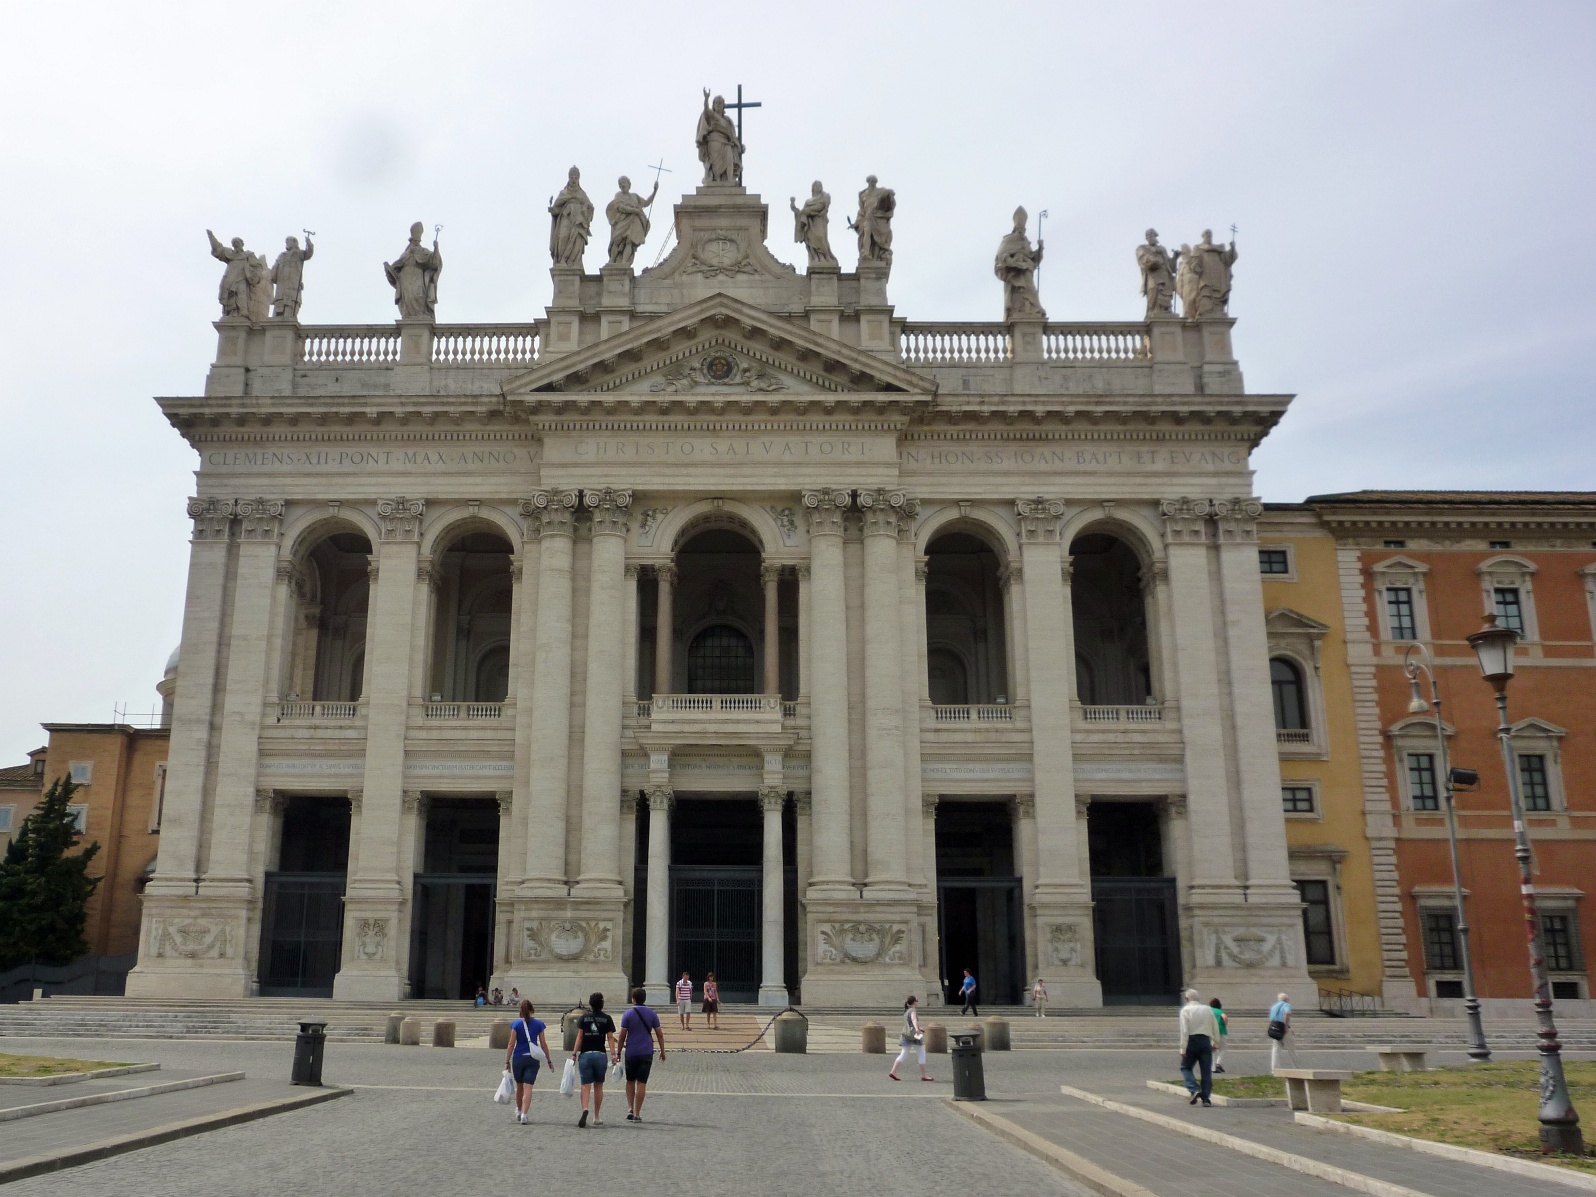 Латеранский дворц в Риме (Basilica di San Giovanni in Laterano), где находится Предтеченская церковь